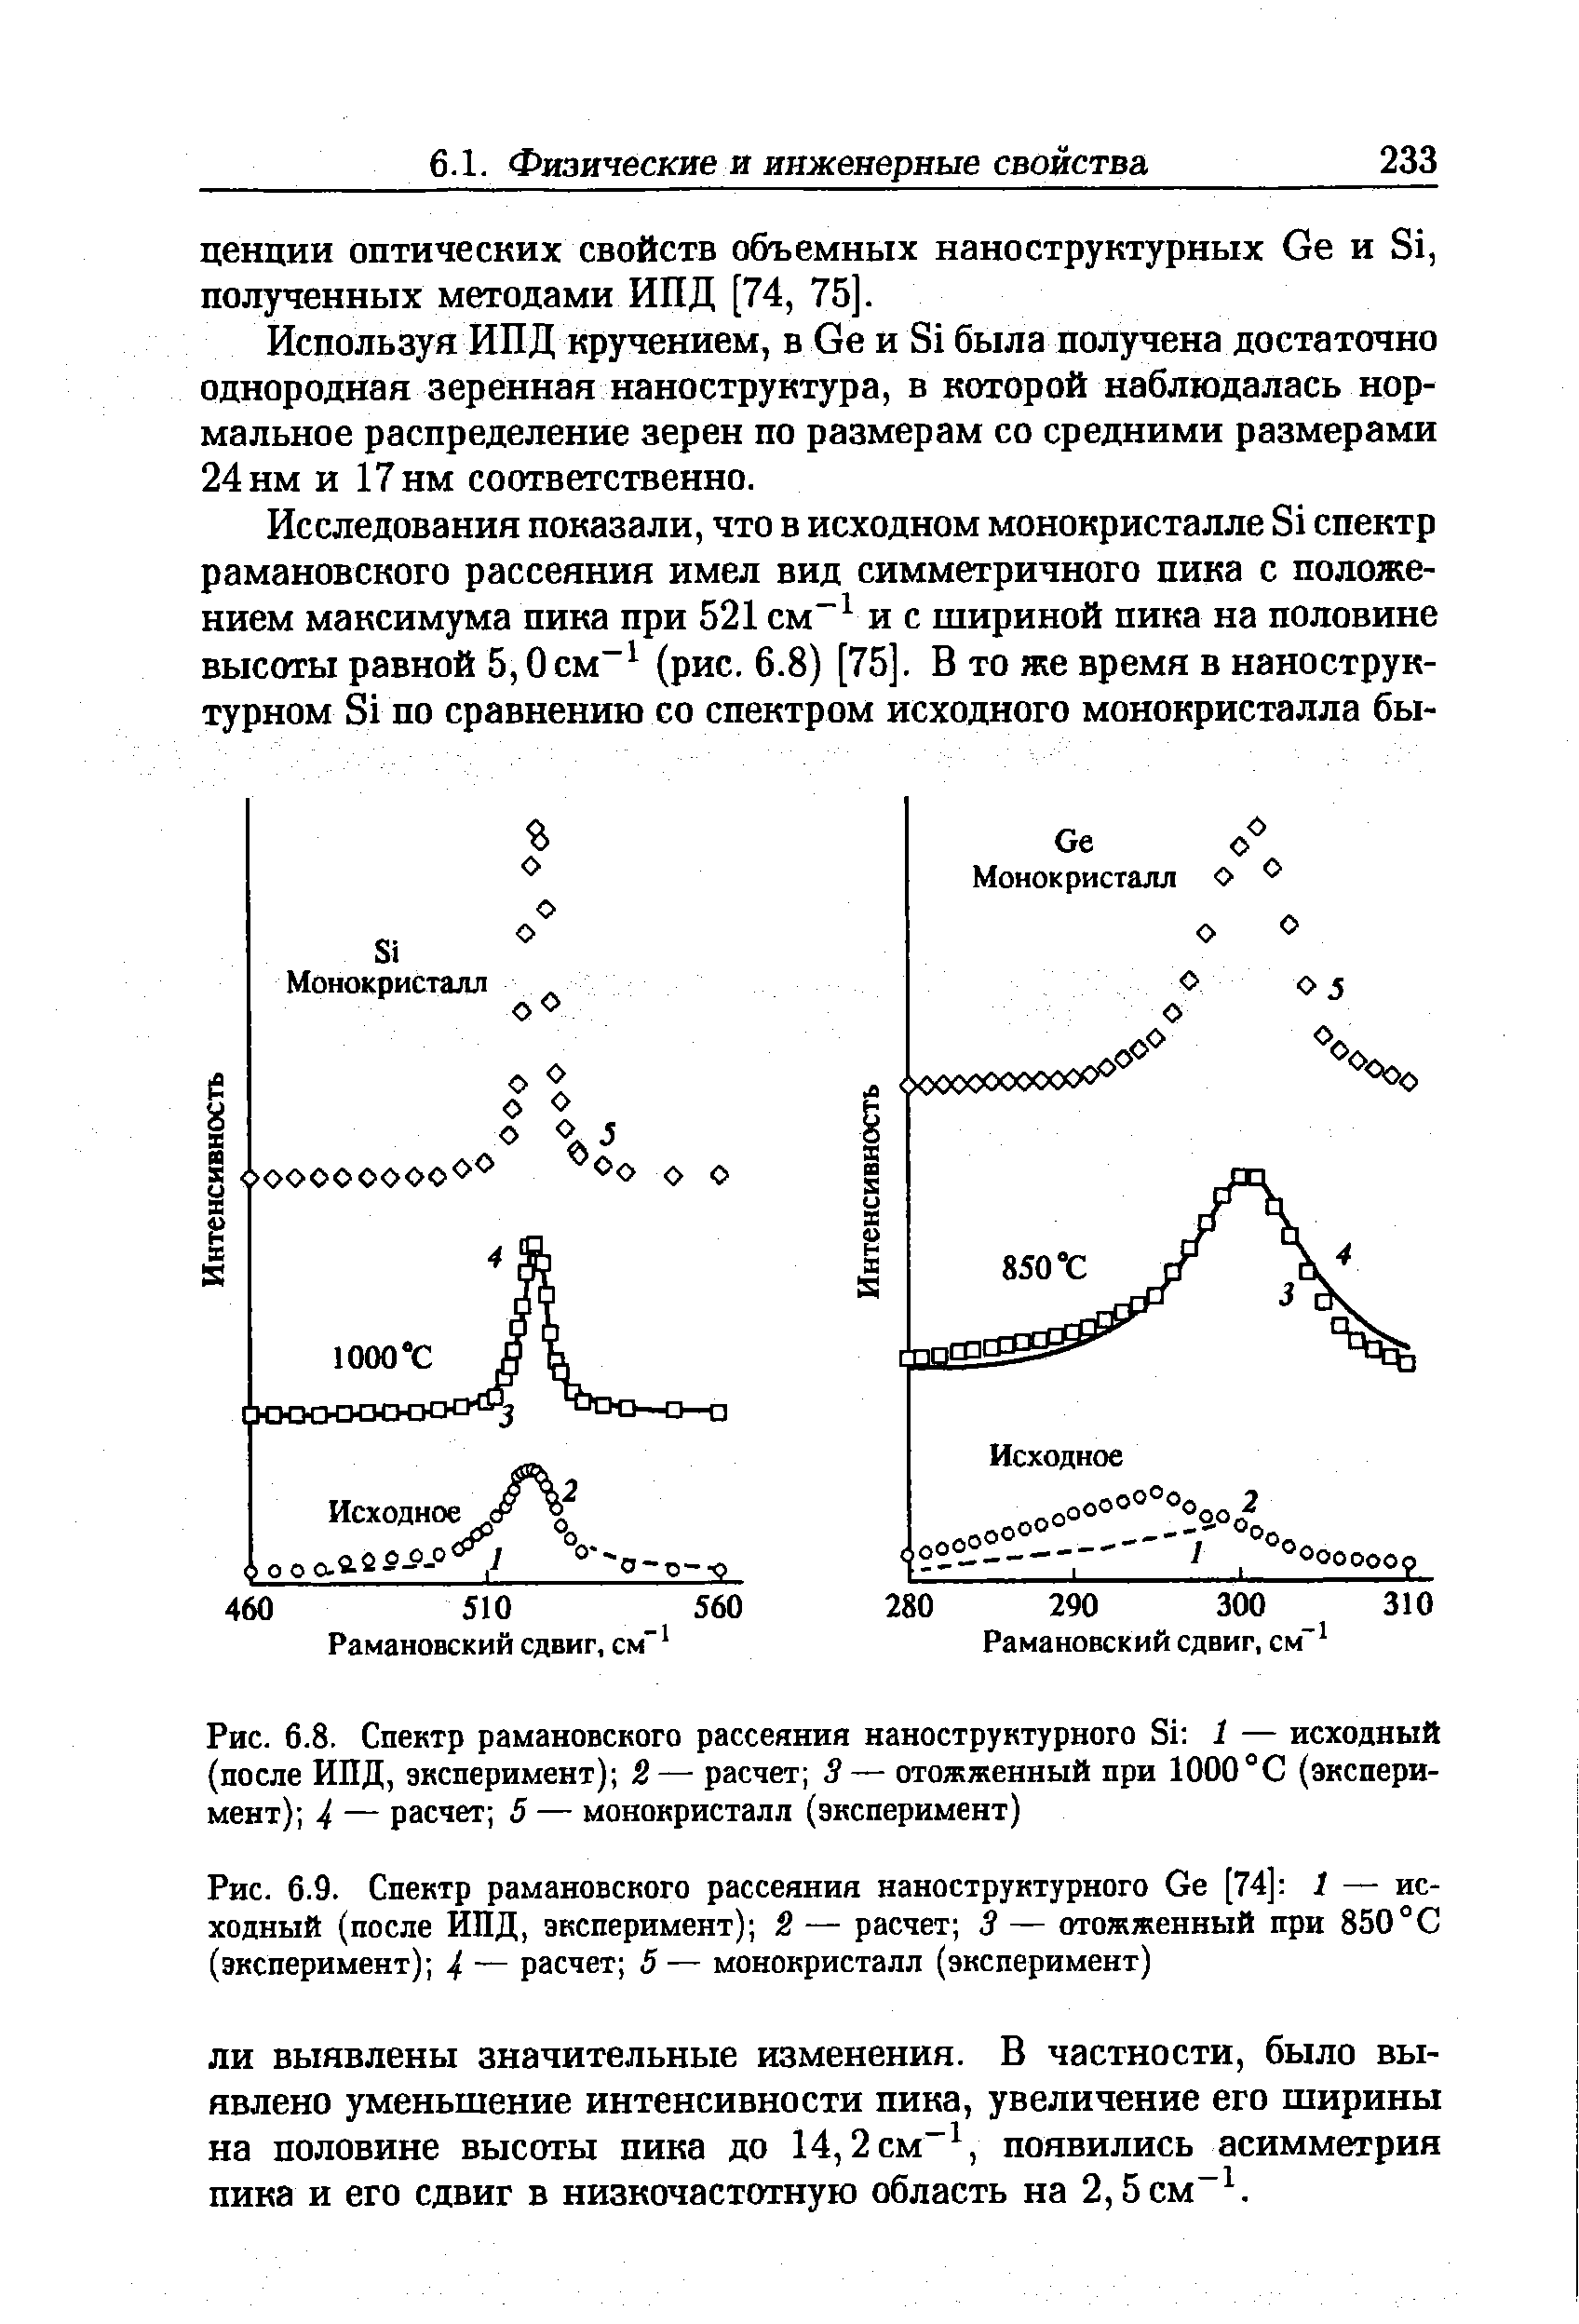 Рис. 6.8. Спектр <a href="/info/22635">рамановского рассеяния</a> наноструктурного Si 1 — исходный (после ИПД, эксперимент) 2— расчет 5— отожженный при 1000°С (эксперимент) 4 — расчет 5 — монокристалл (эксперимент)
